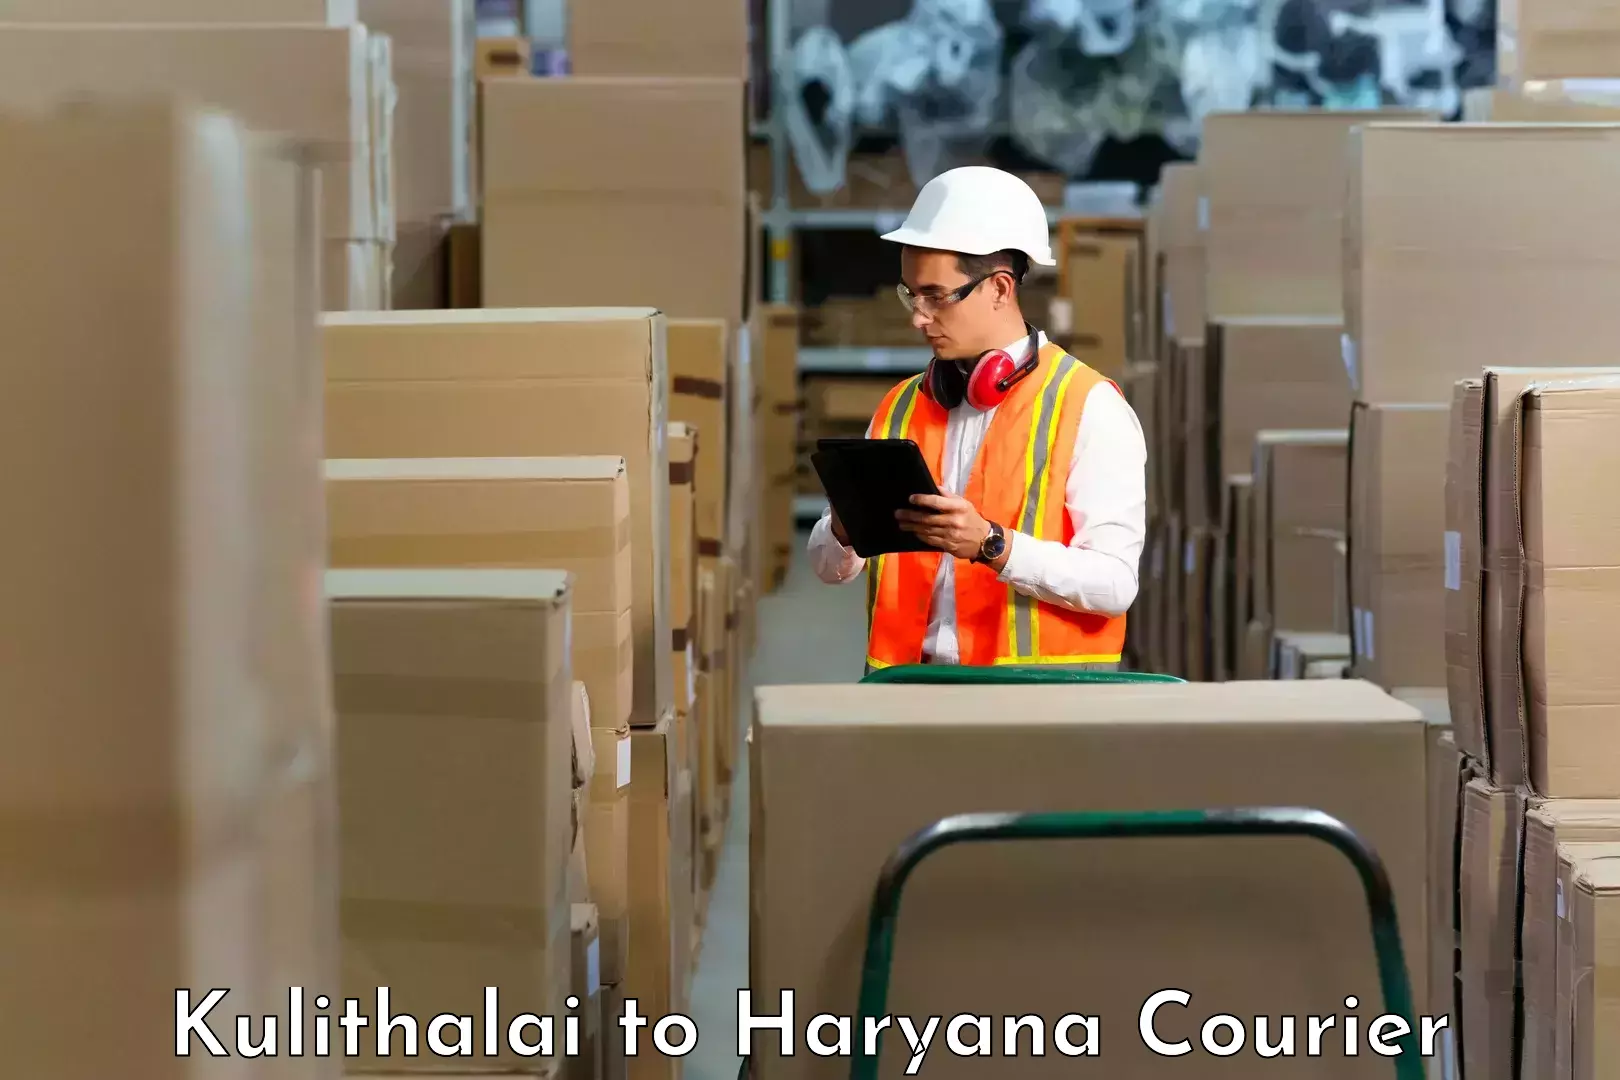 Efficient cargo handling Kulithalai to Odhan